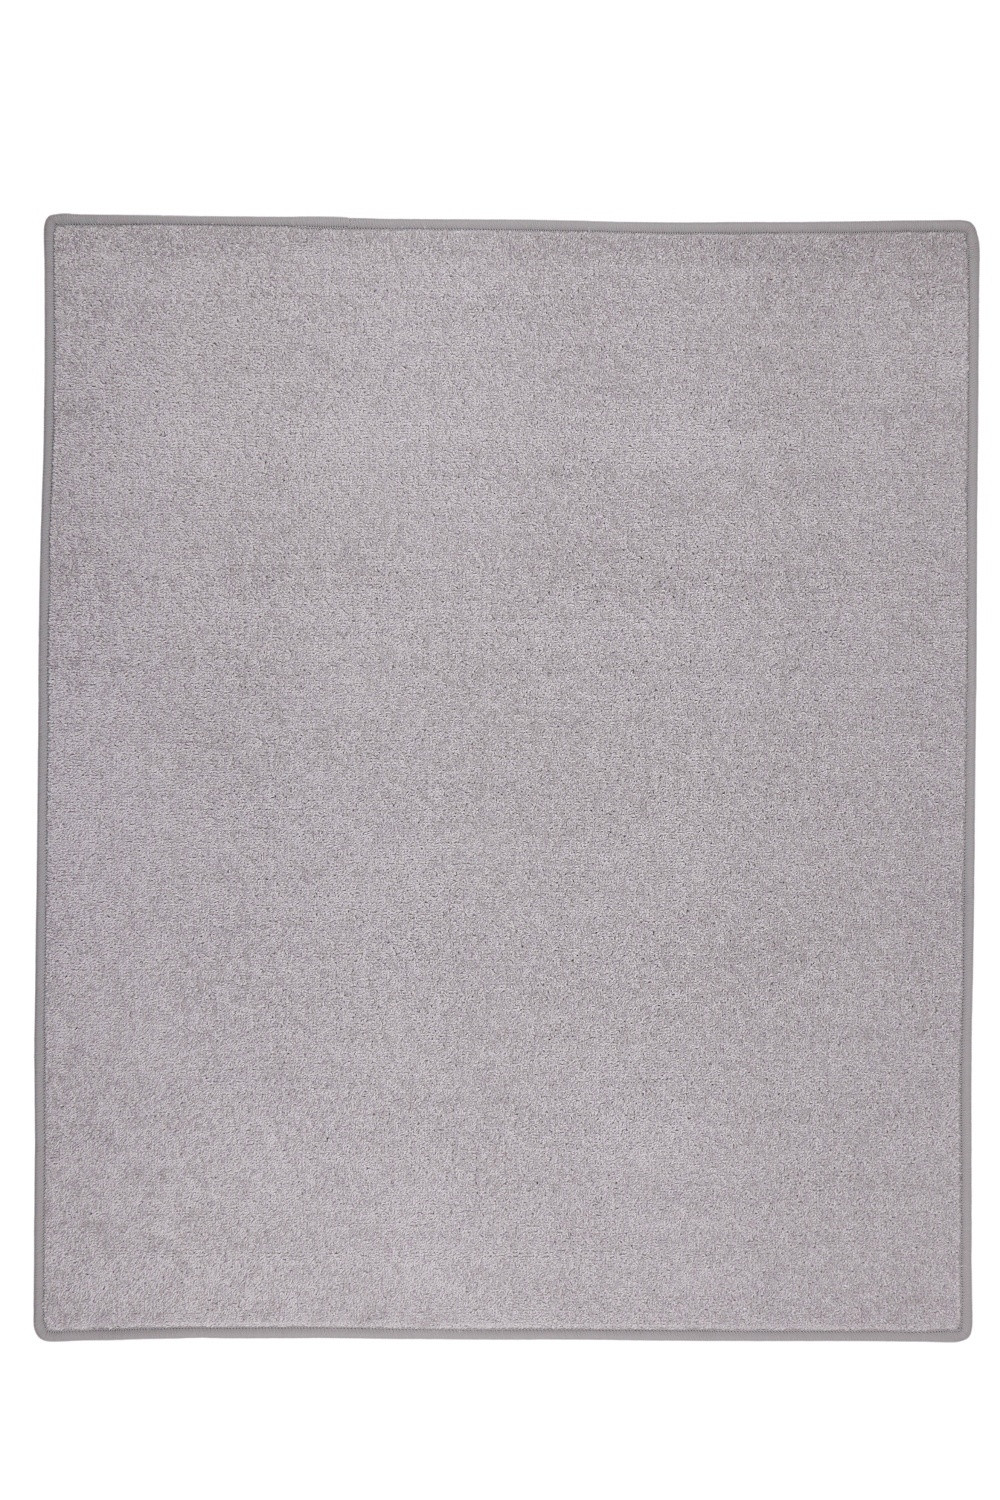 Kusový koberec Eton sivý 73 - 120x160 cm Vopi koberce 